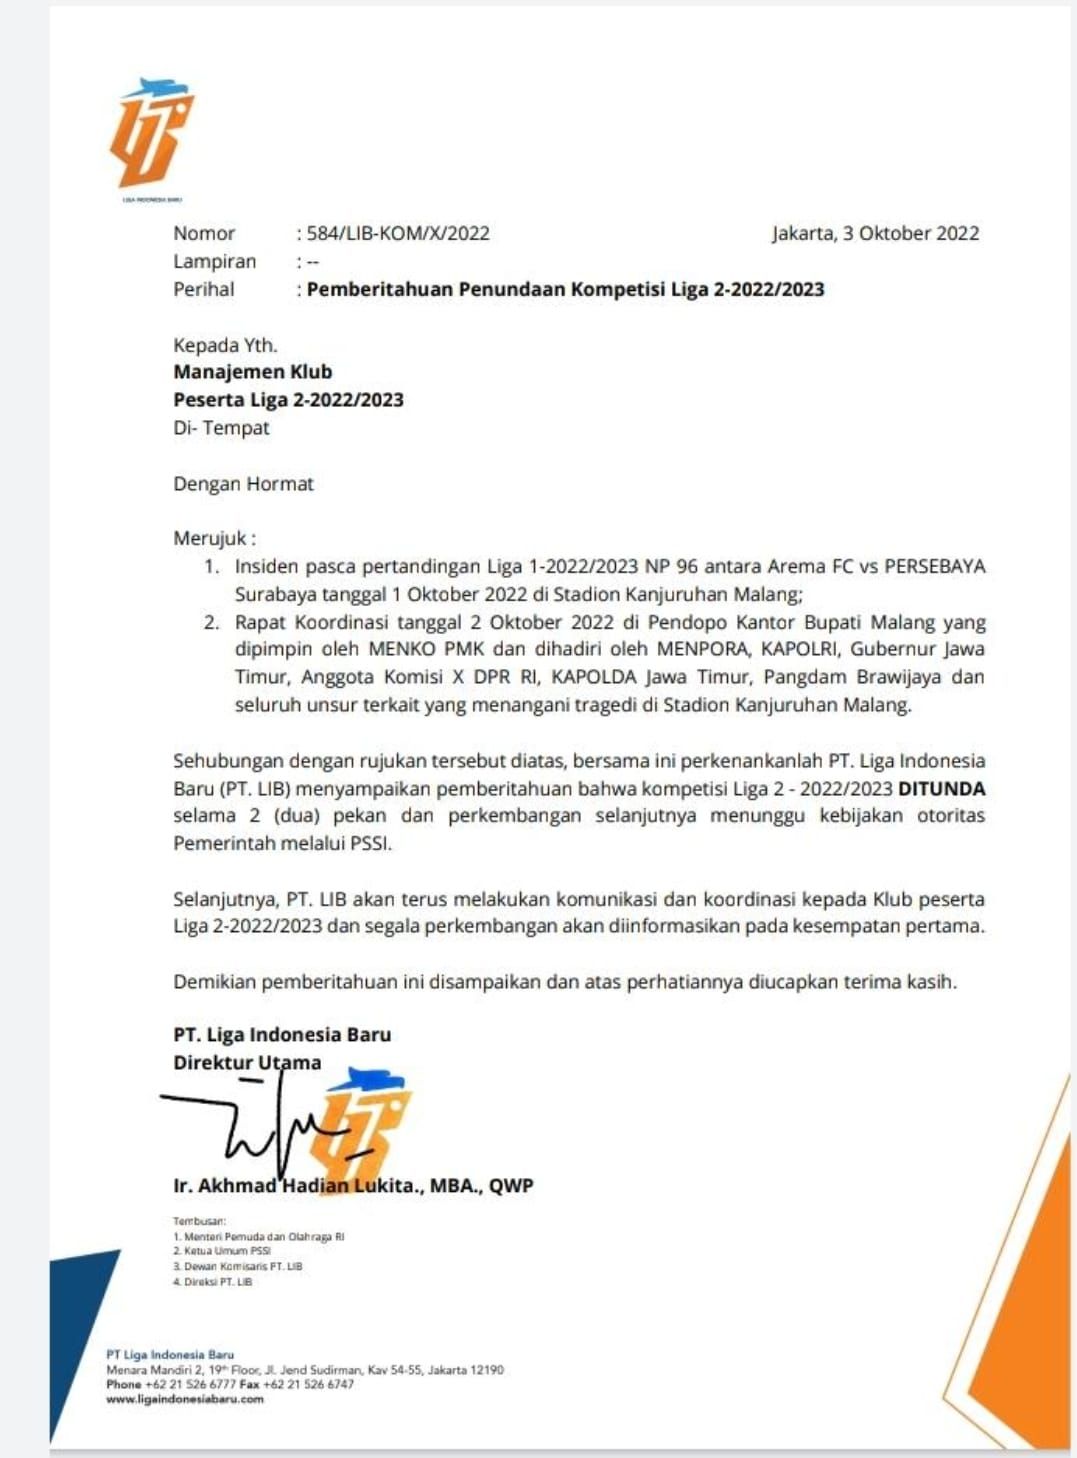 Surat resmi PT LIB tentang penundaan Liga 2 selama dua pekan karena duka Tragedi Kanjuruhan.